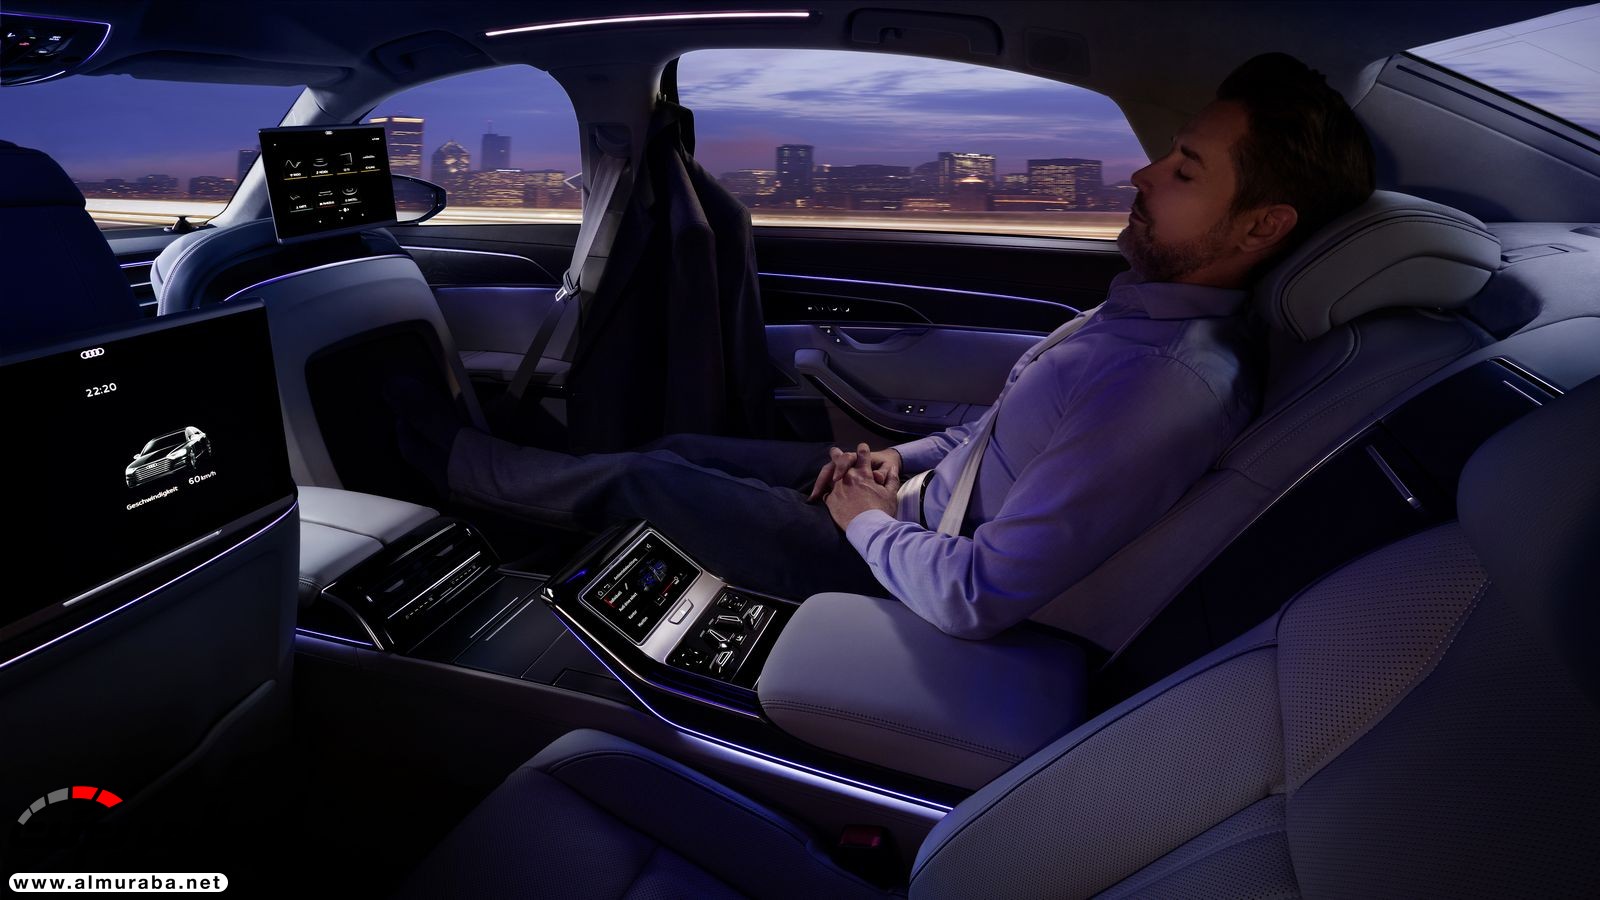 أودي A8 2018 الجديدة كلياً تكشف نفسها بتصميم وتقنيات متطورة "معلومات + 100 صورة" Audi A8 29